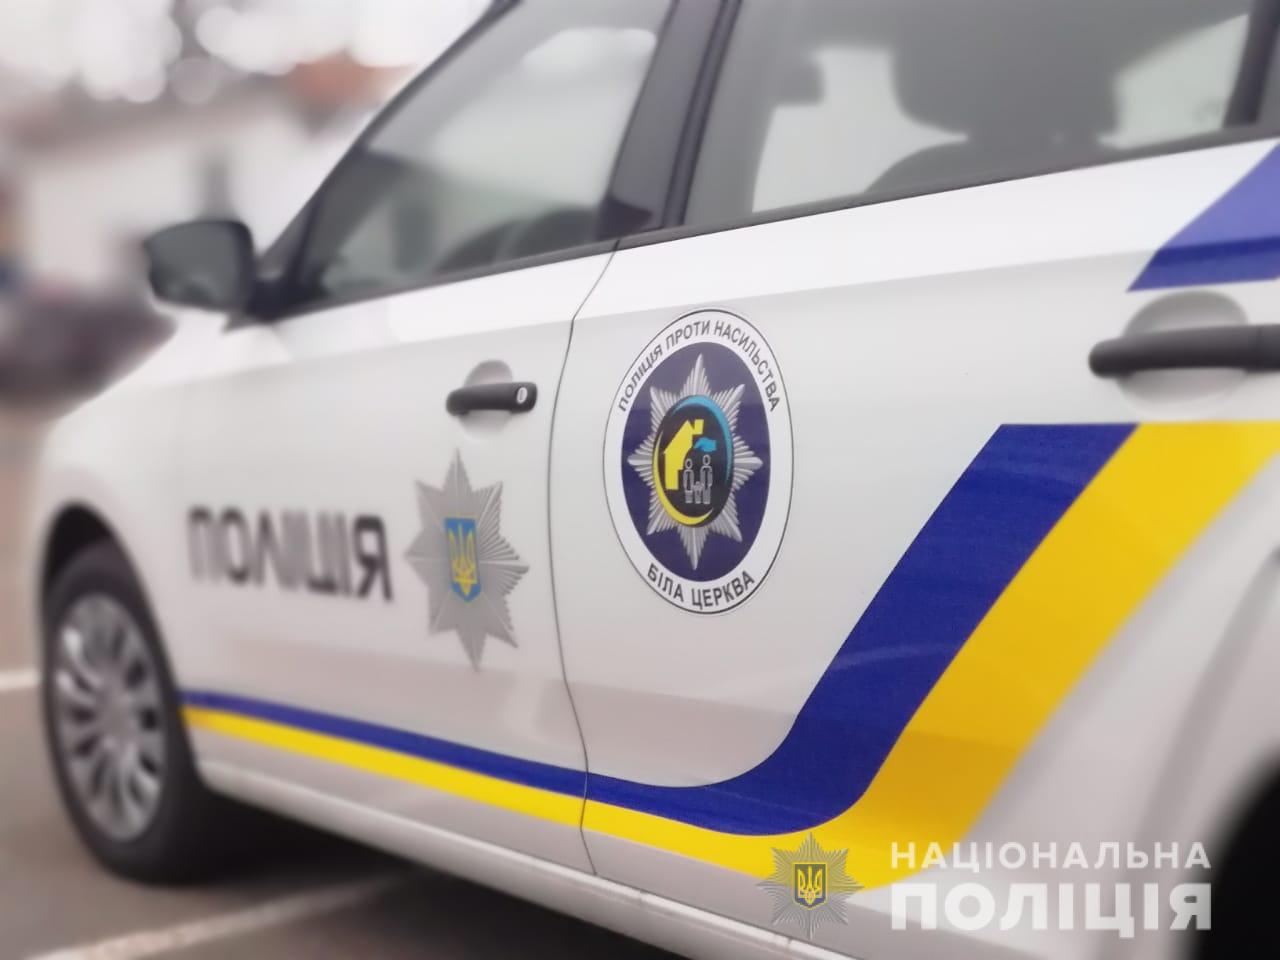 Хотел похвастаться: под Харьковом парень избил полицейского и повредил его машину